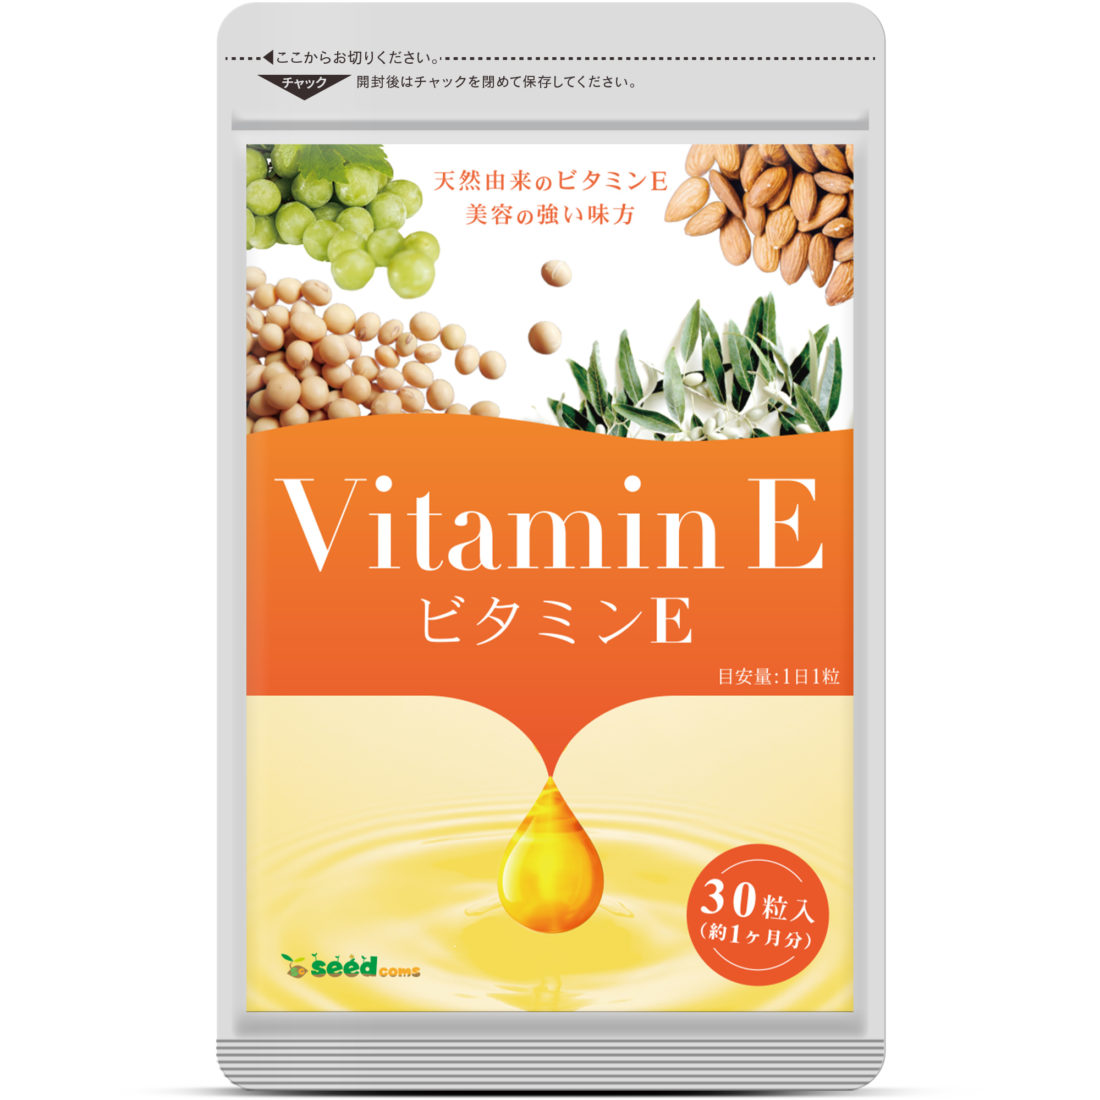 Vitamin E seedcoms seedcoms